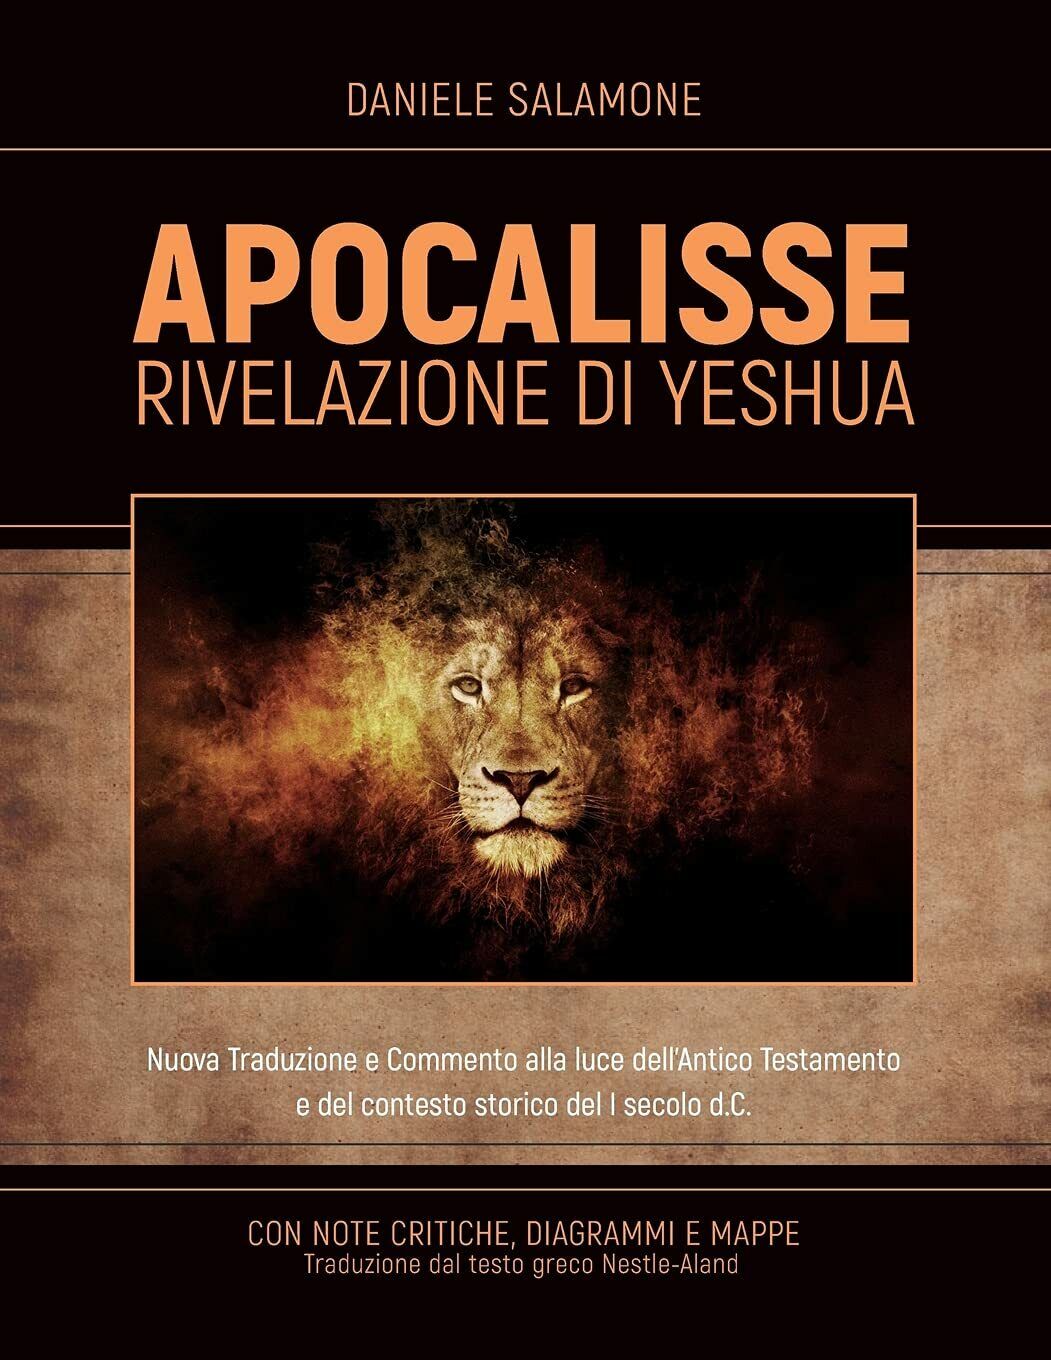 APOCALISSE - Rivelazione di Yeshua Nuova Traduzione e Commento alla luce delL'An